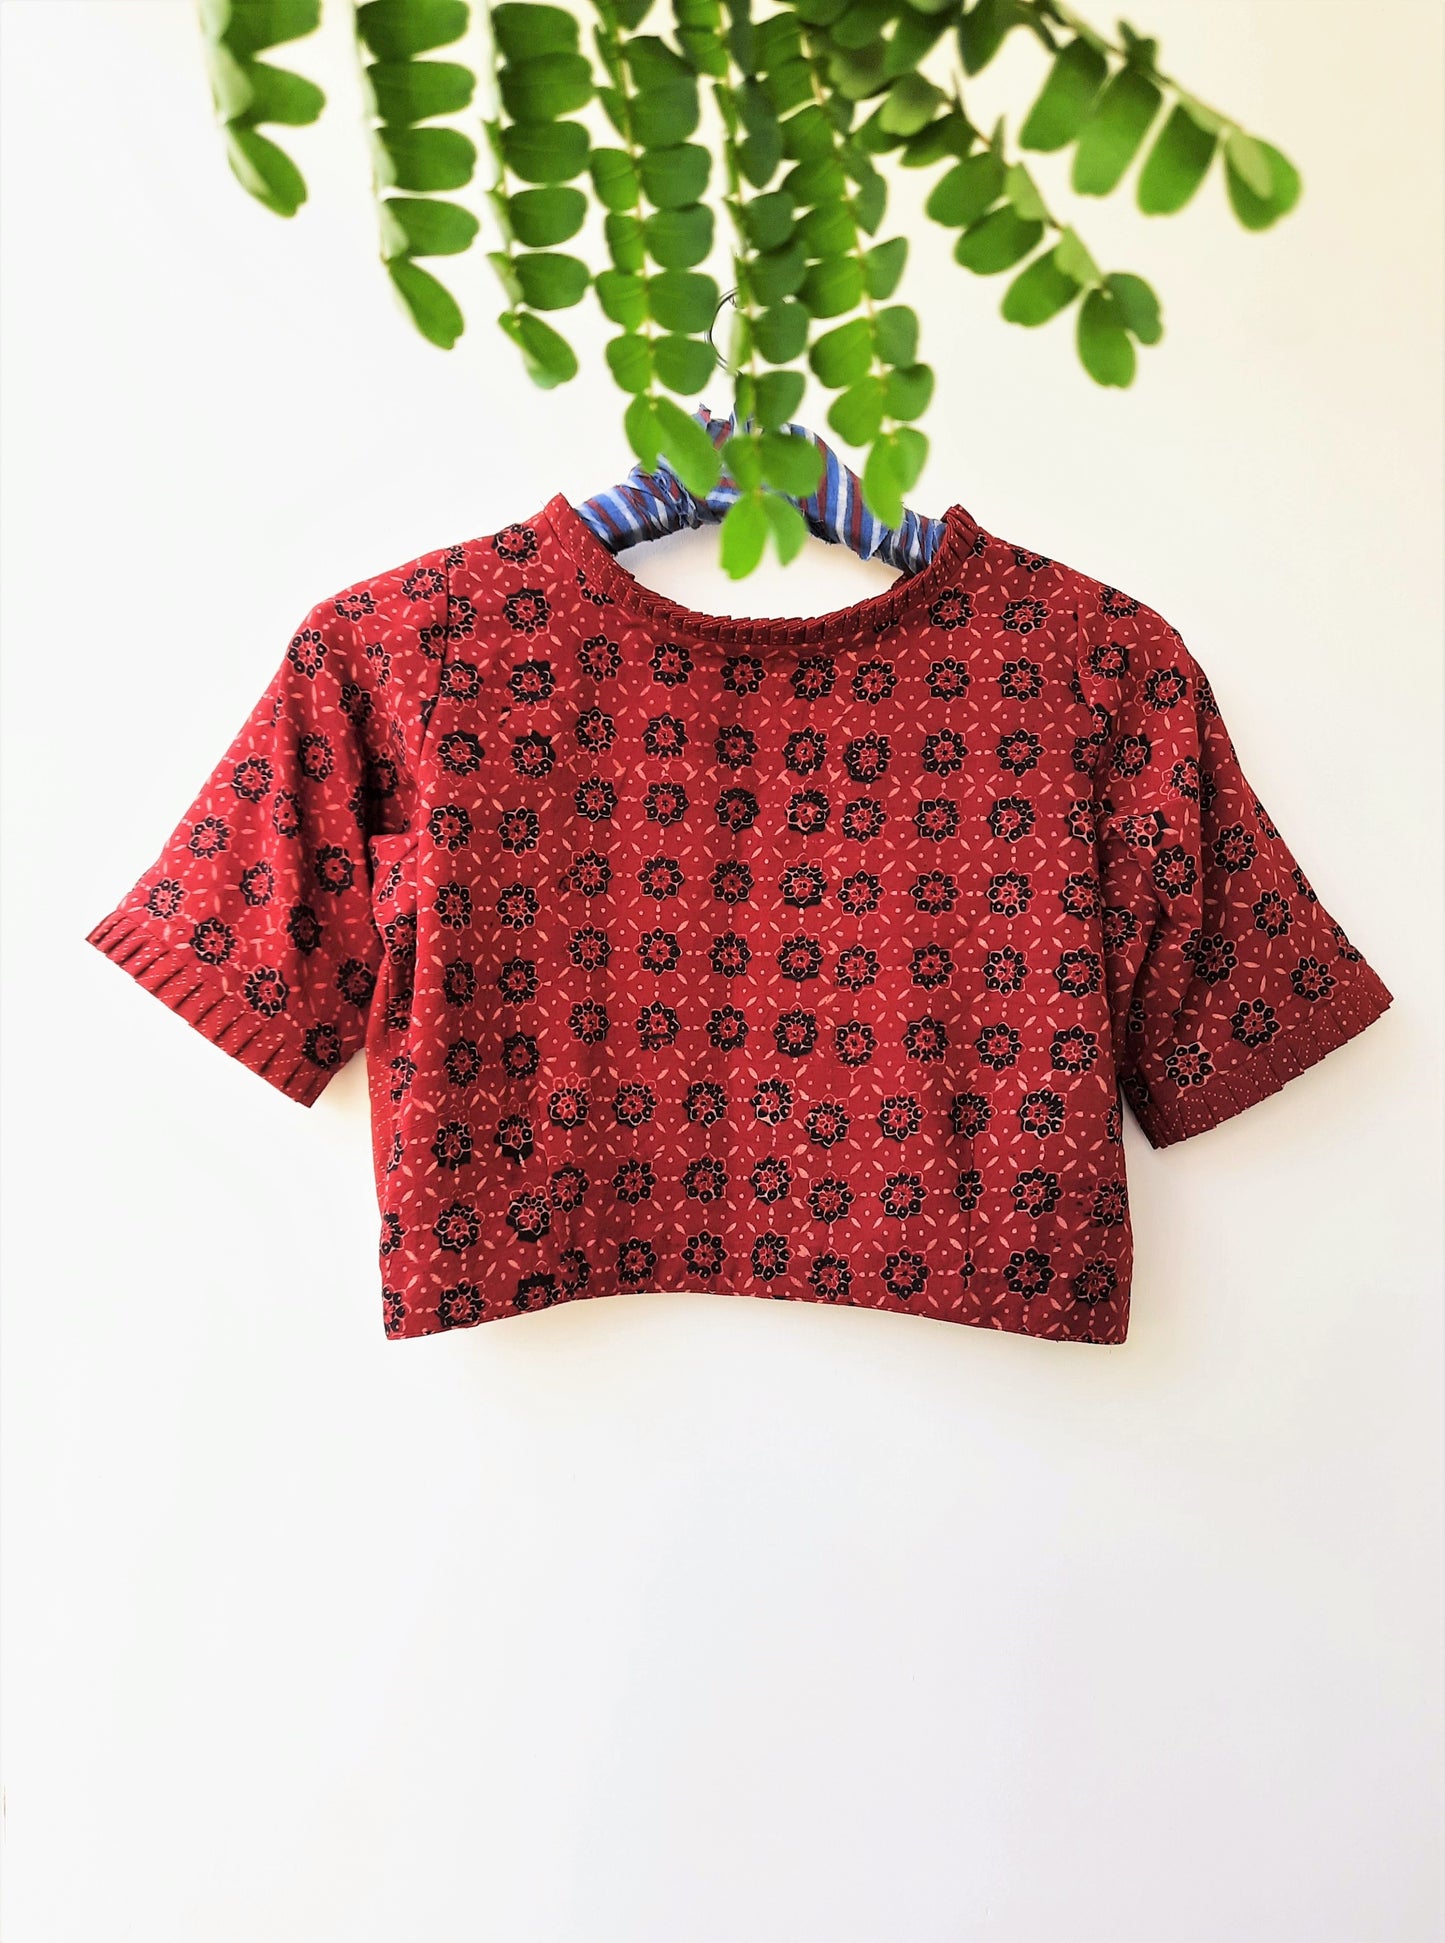 Madder red ajrakh blouse, ajrakh prints blouse, ajrakh hand block print madder red saree blouse, ajrakh blouse